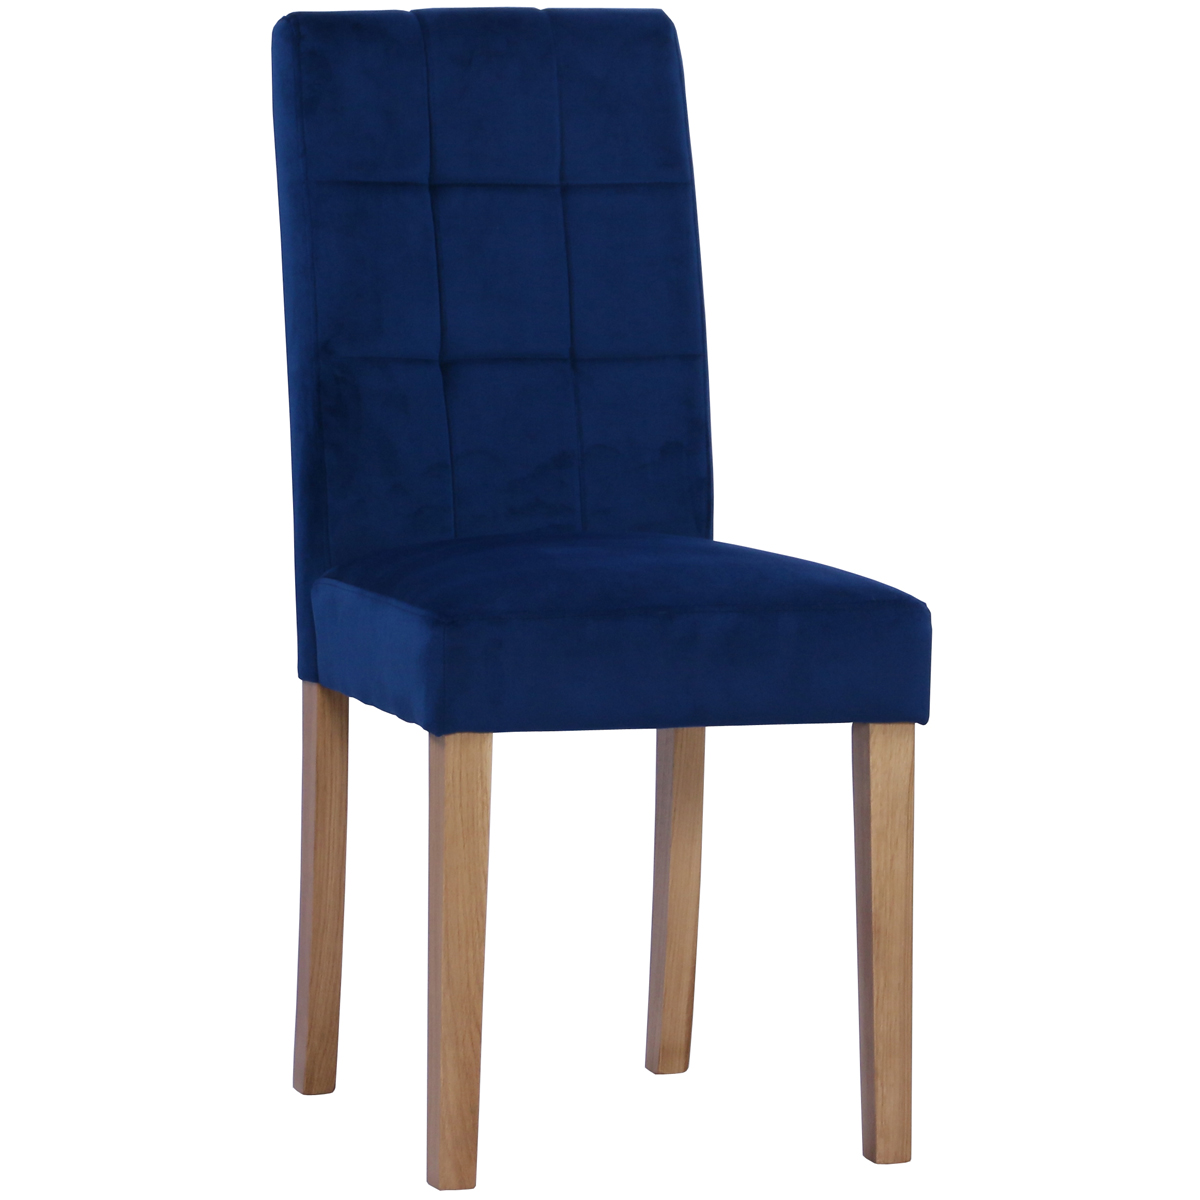 New Oak Ash 103 Chair